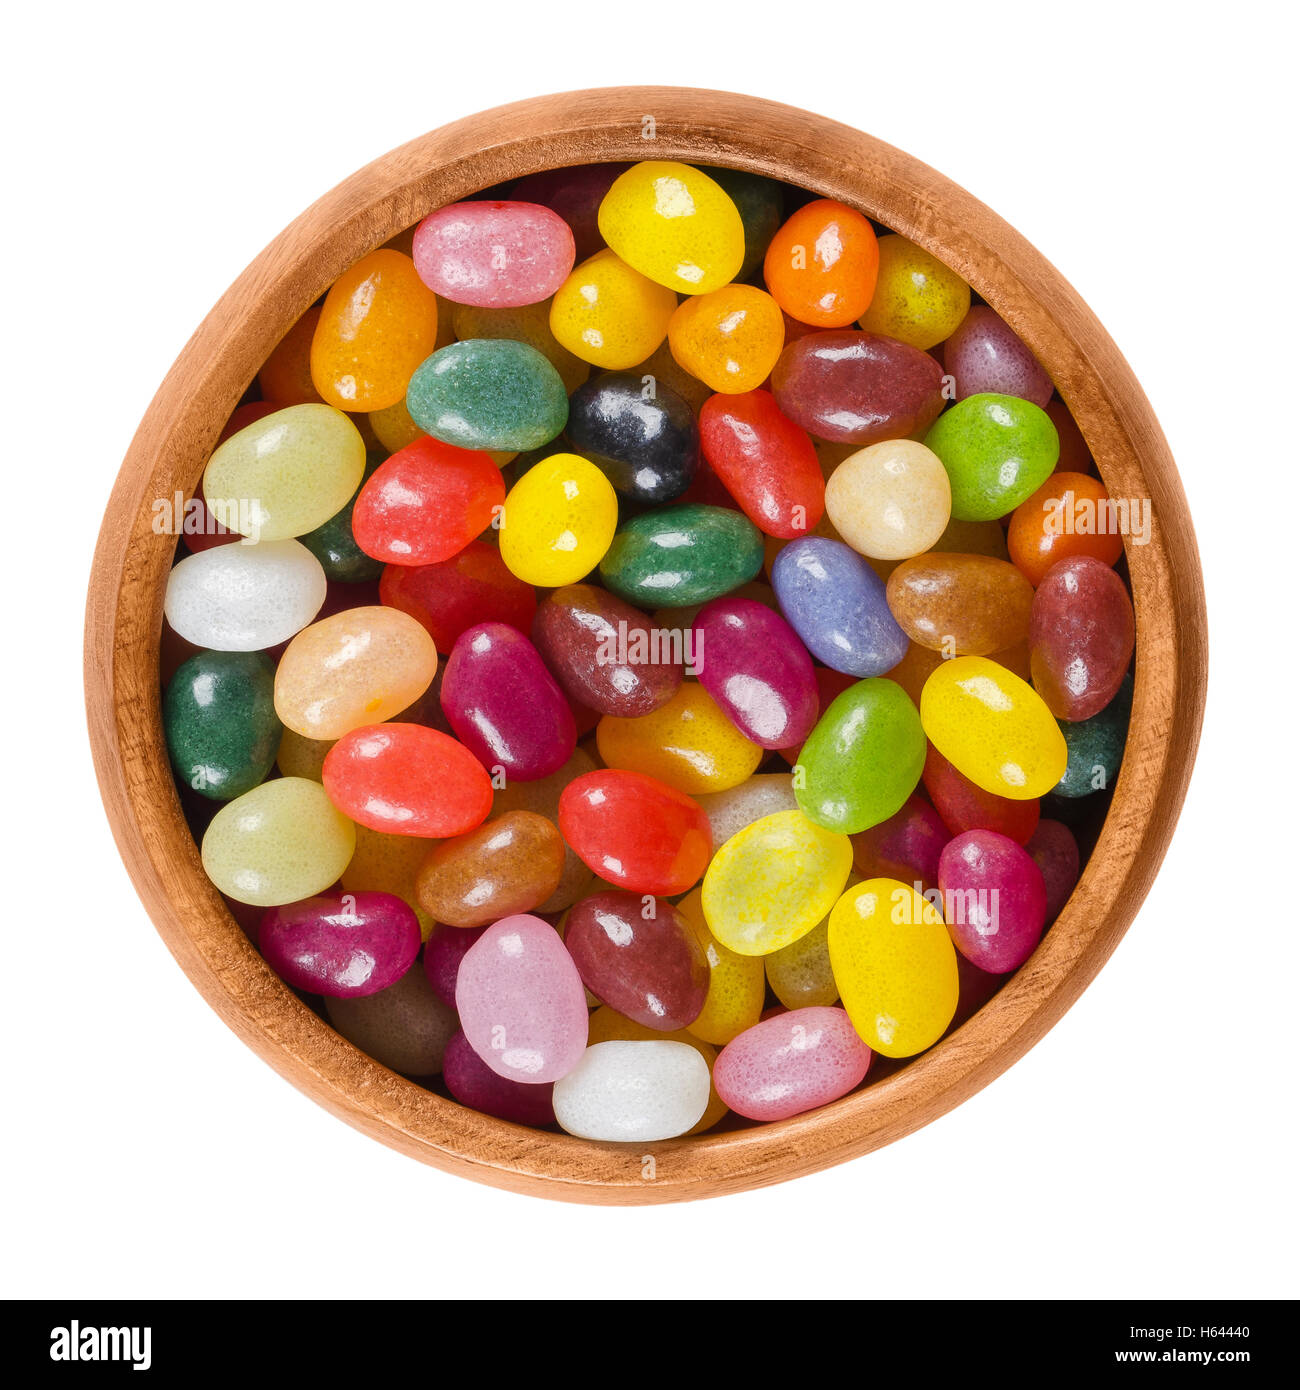 Jelly Beans in ciotola di legno su sfondo bianco. Un assortimento di piccole a forma di fagiolo caramelle di zucchero in diversi colori con caramella morbida. Foto Stock